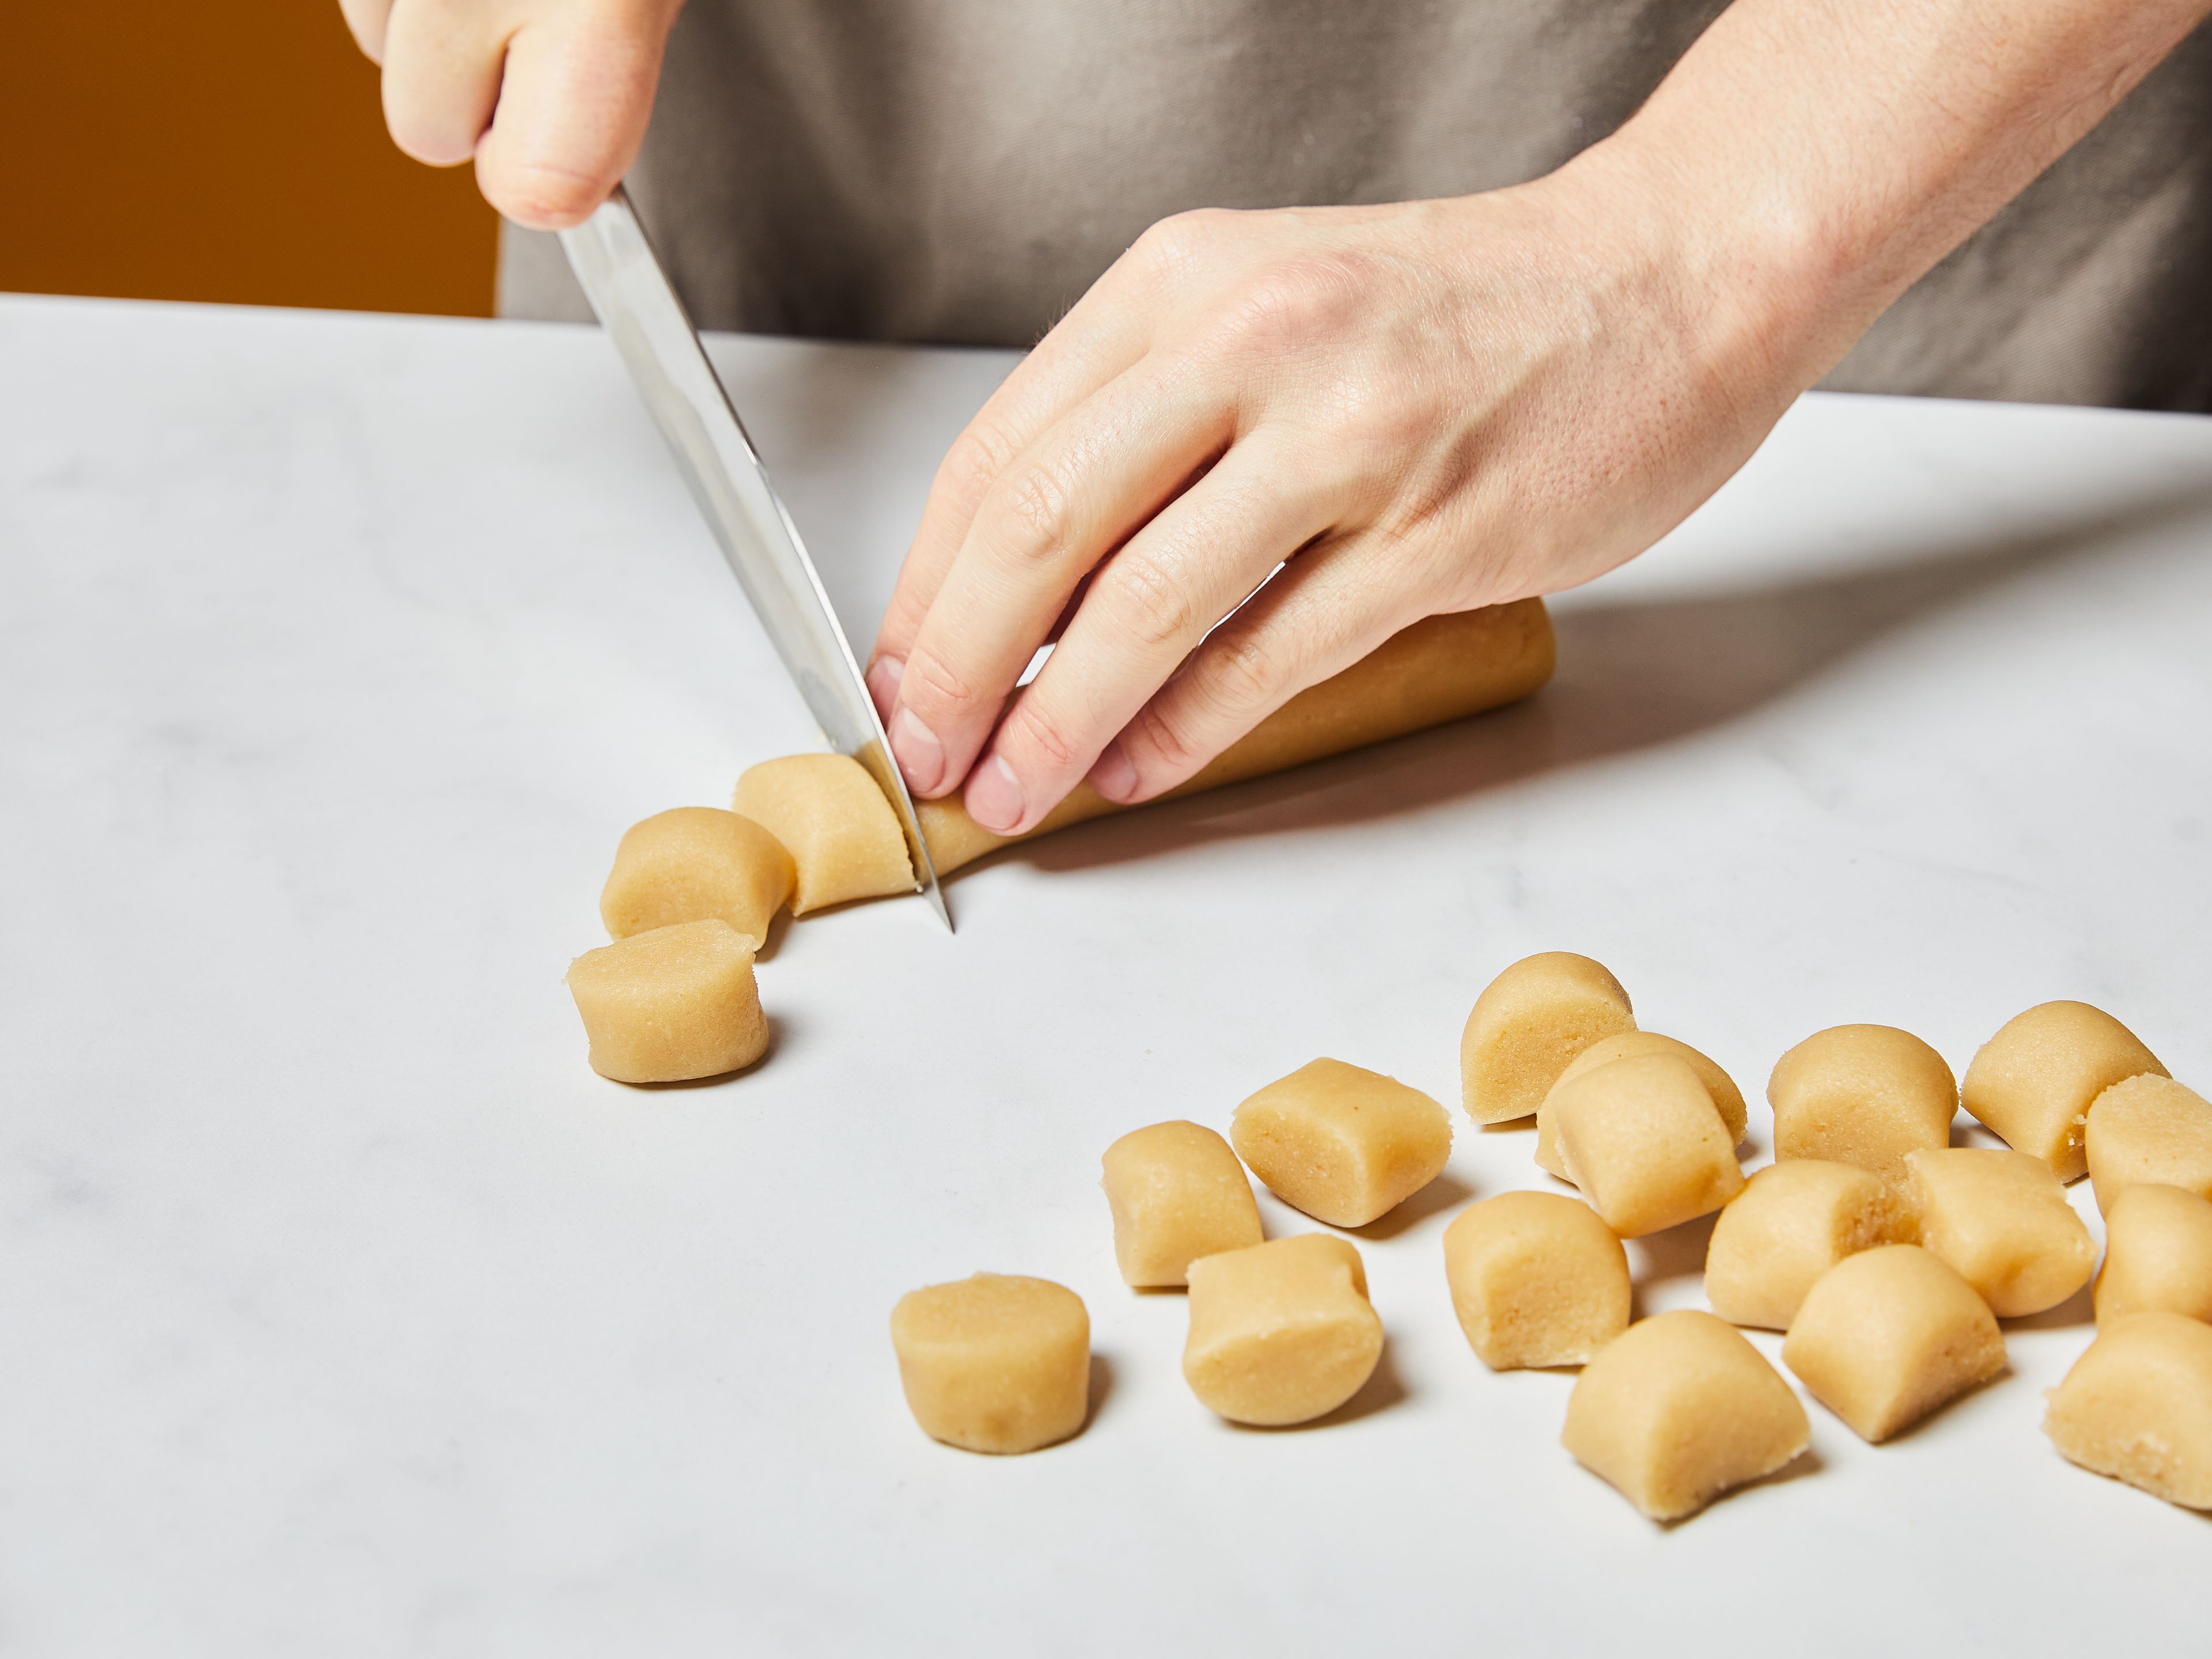 Den Backofen auf 175°C (155°C Umluft) vorheizen. Marzipanrohmasse mit den Händen in kleine Stücke zupfen. Ei trennen und das Eigelb in einer kleinen Schüssel beiseitestellen. Marzipan, Eiweiß, Mehl, Puderzucker, gemahlene Mandeln, Amaretto, Salz und Orangenabrieb (falls verwendet) in eine große Rührschüssel geben und mit den Händen oder einem Handrührgerät zu einem glatten Teig verkneten. Den Teig zu langen Stangen ausrollen und in walnussgroße gleichmäßige Stücke teilen.